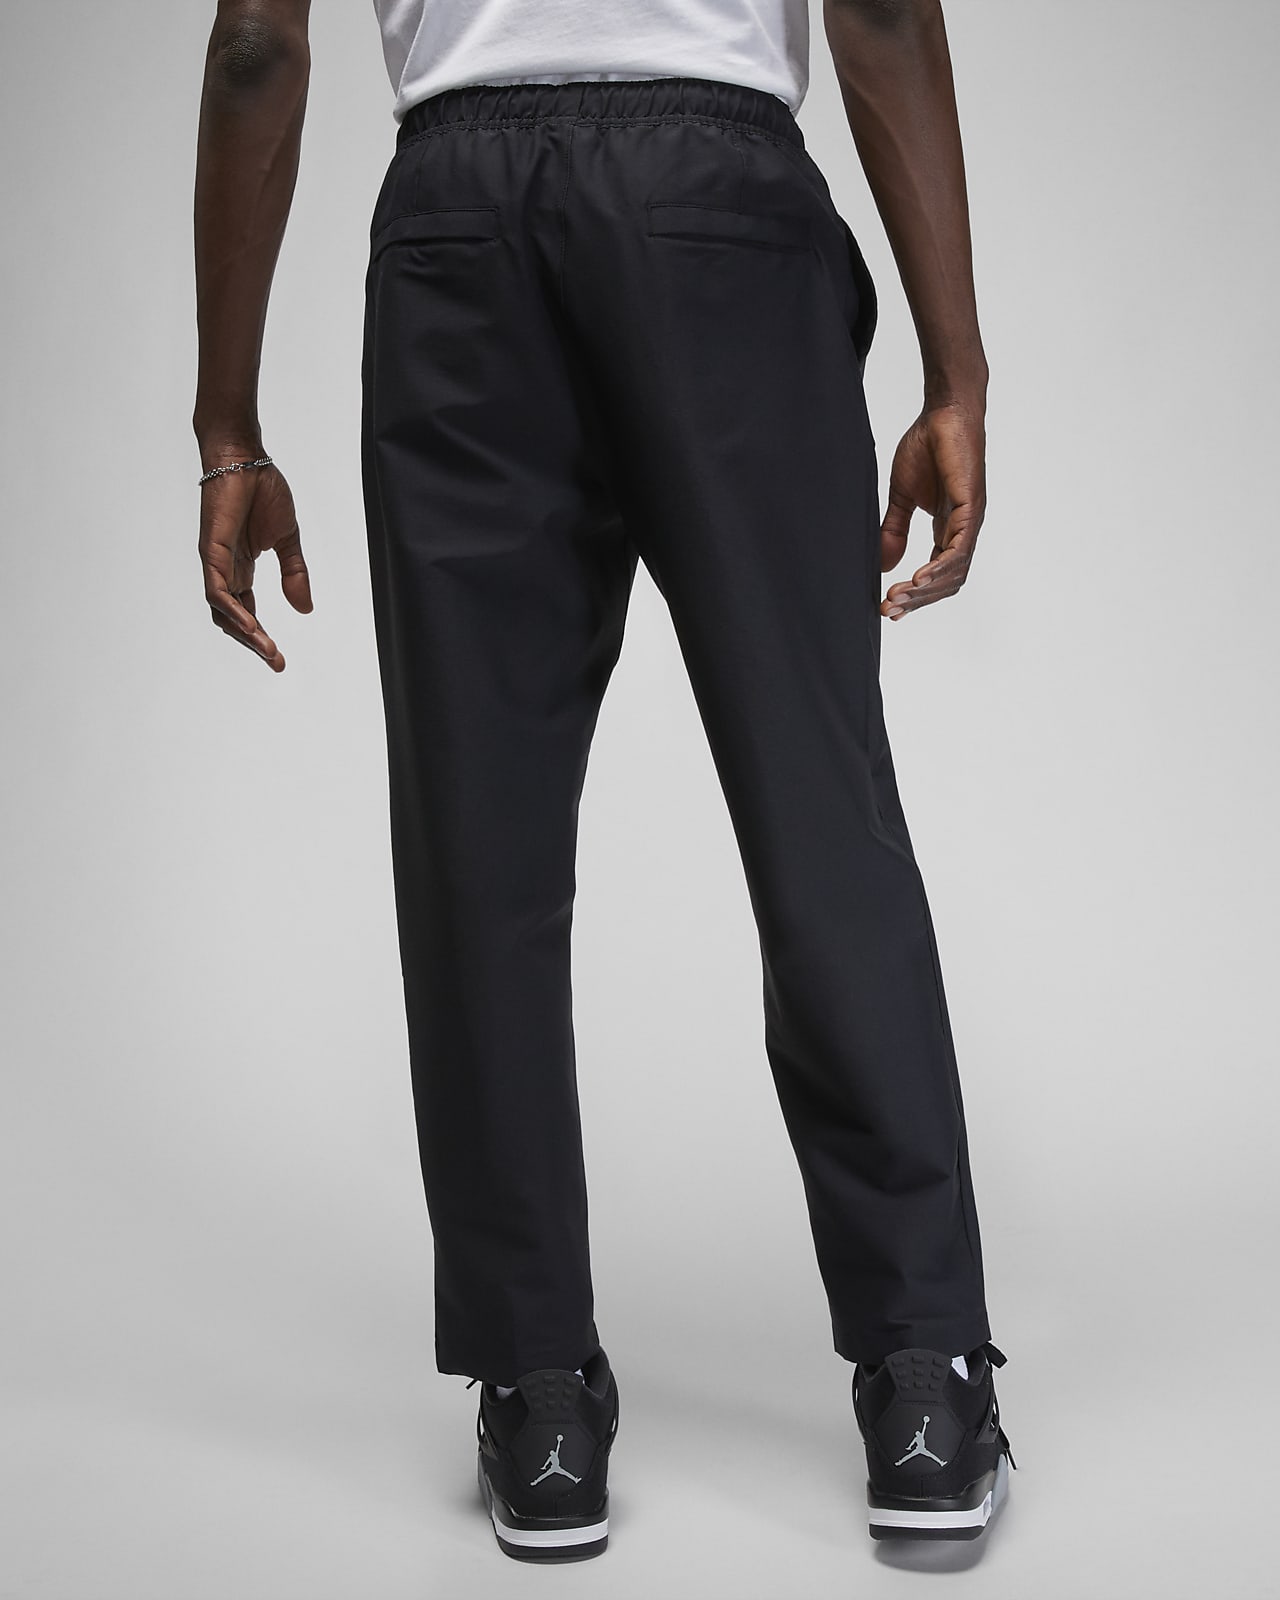 Kollisionskursus Tage en risiko Fonetik Korte Jordan Essentials-bukser til mænd. Nike DK